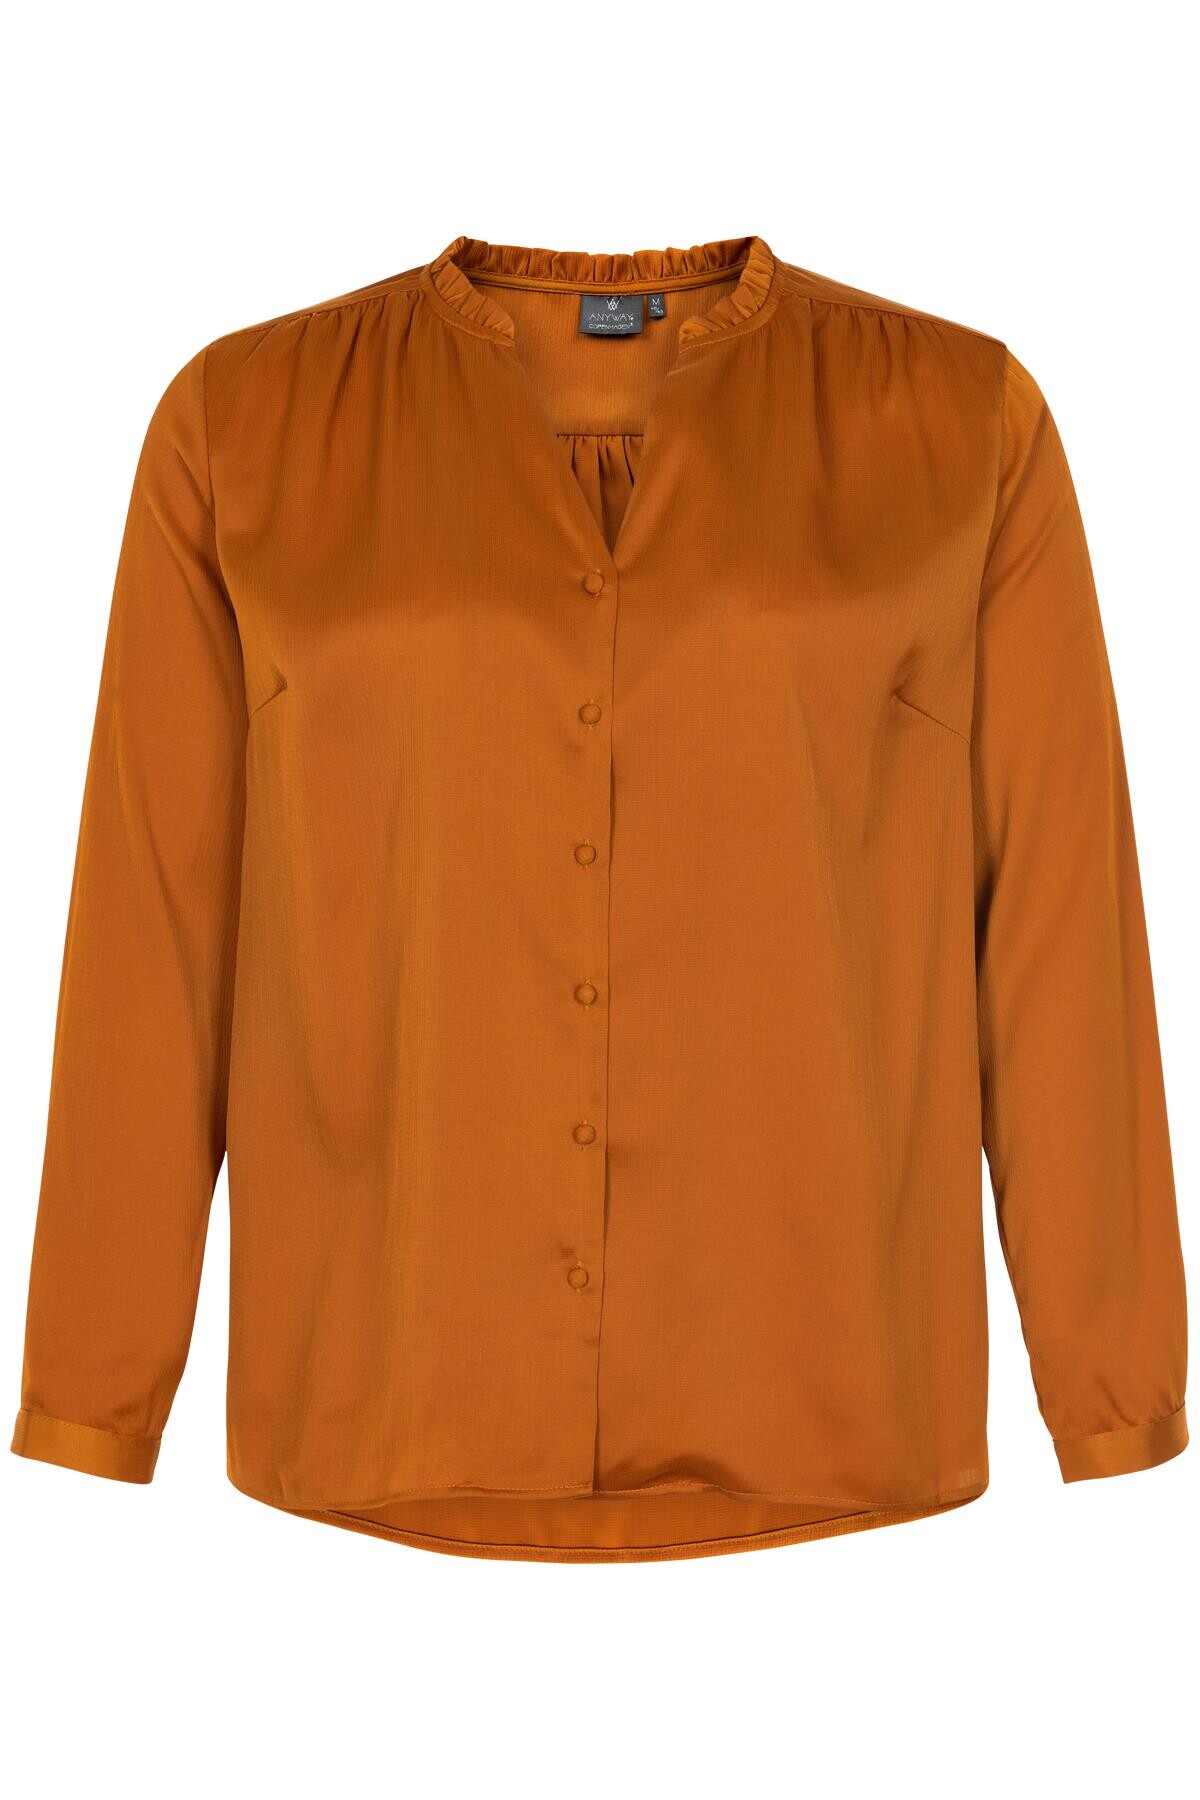 Anyway+ Skjorte Rany+ K, Farve: Orange, Størrelse: S, Dame